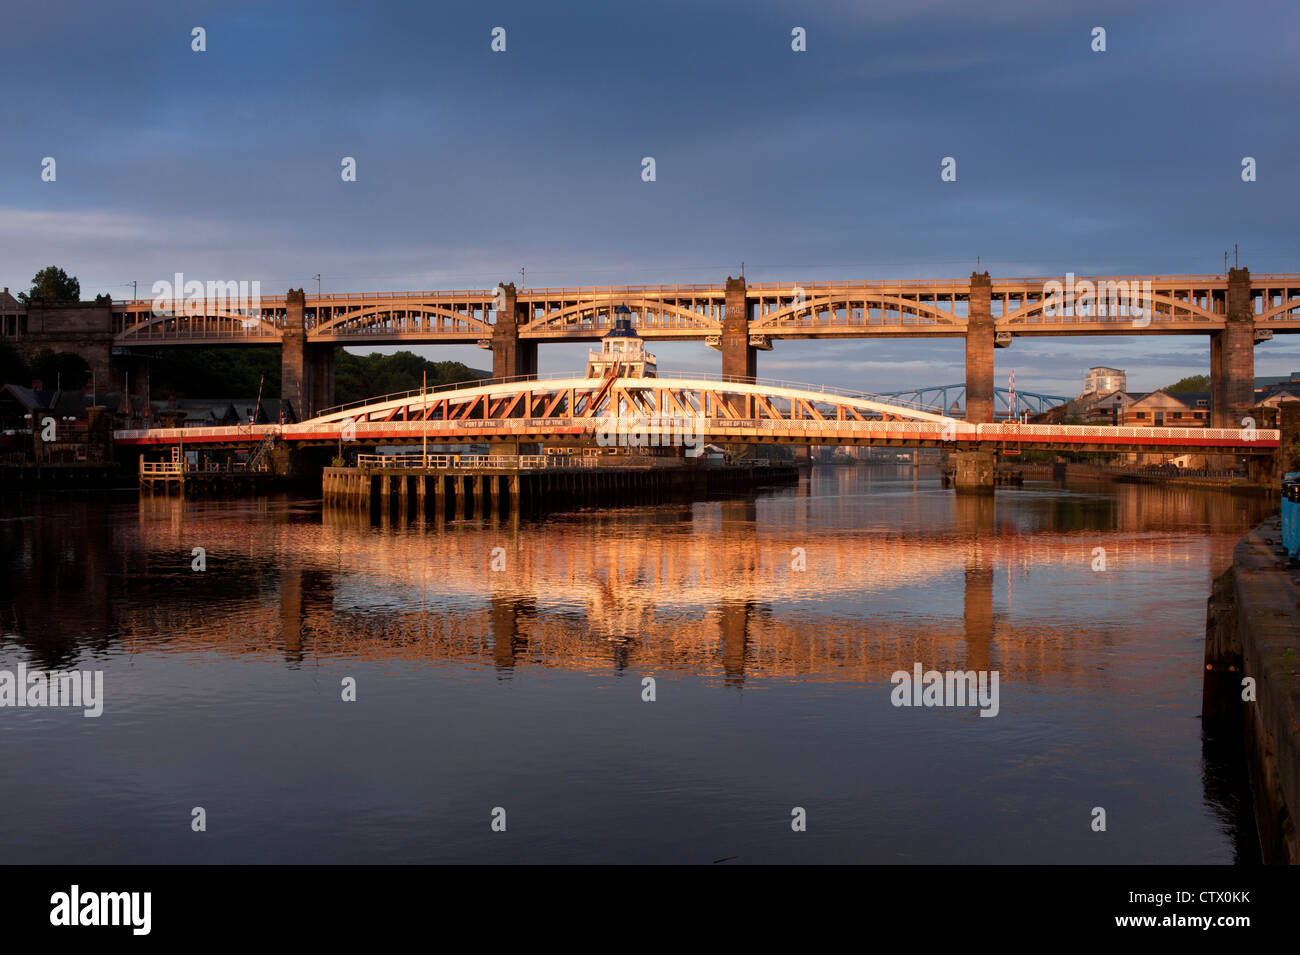 NEWCASTLE, Großbritannien - 02. AUGUST 2012: Die Swing Bridge und die High Level Bridge über dem Fluss Tyne, beleuchtet von der frühen Morgensonne Stockfoto